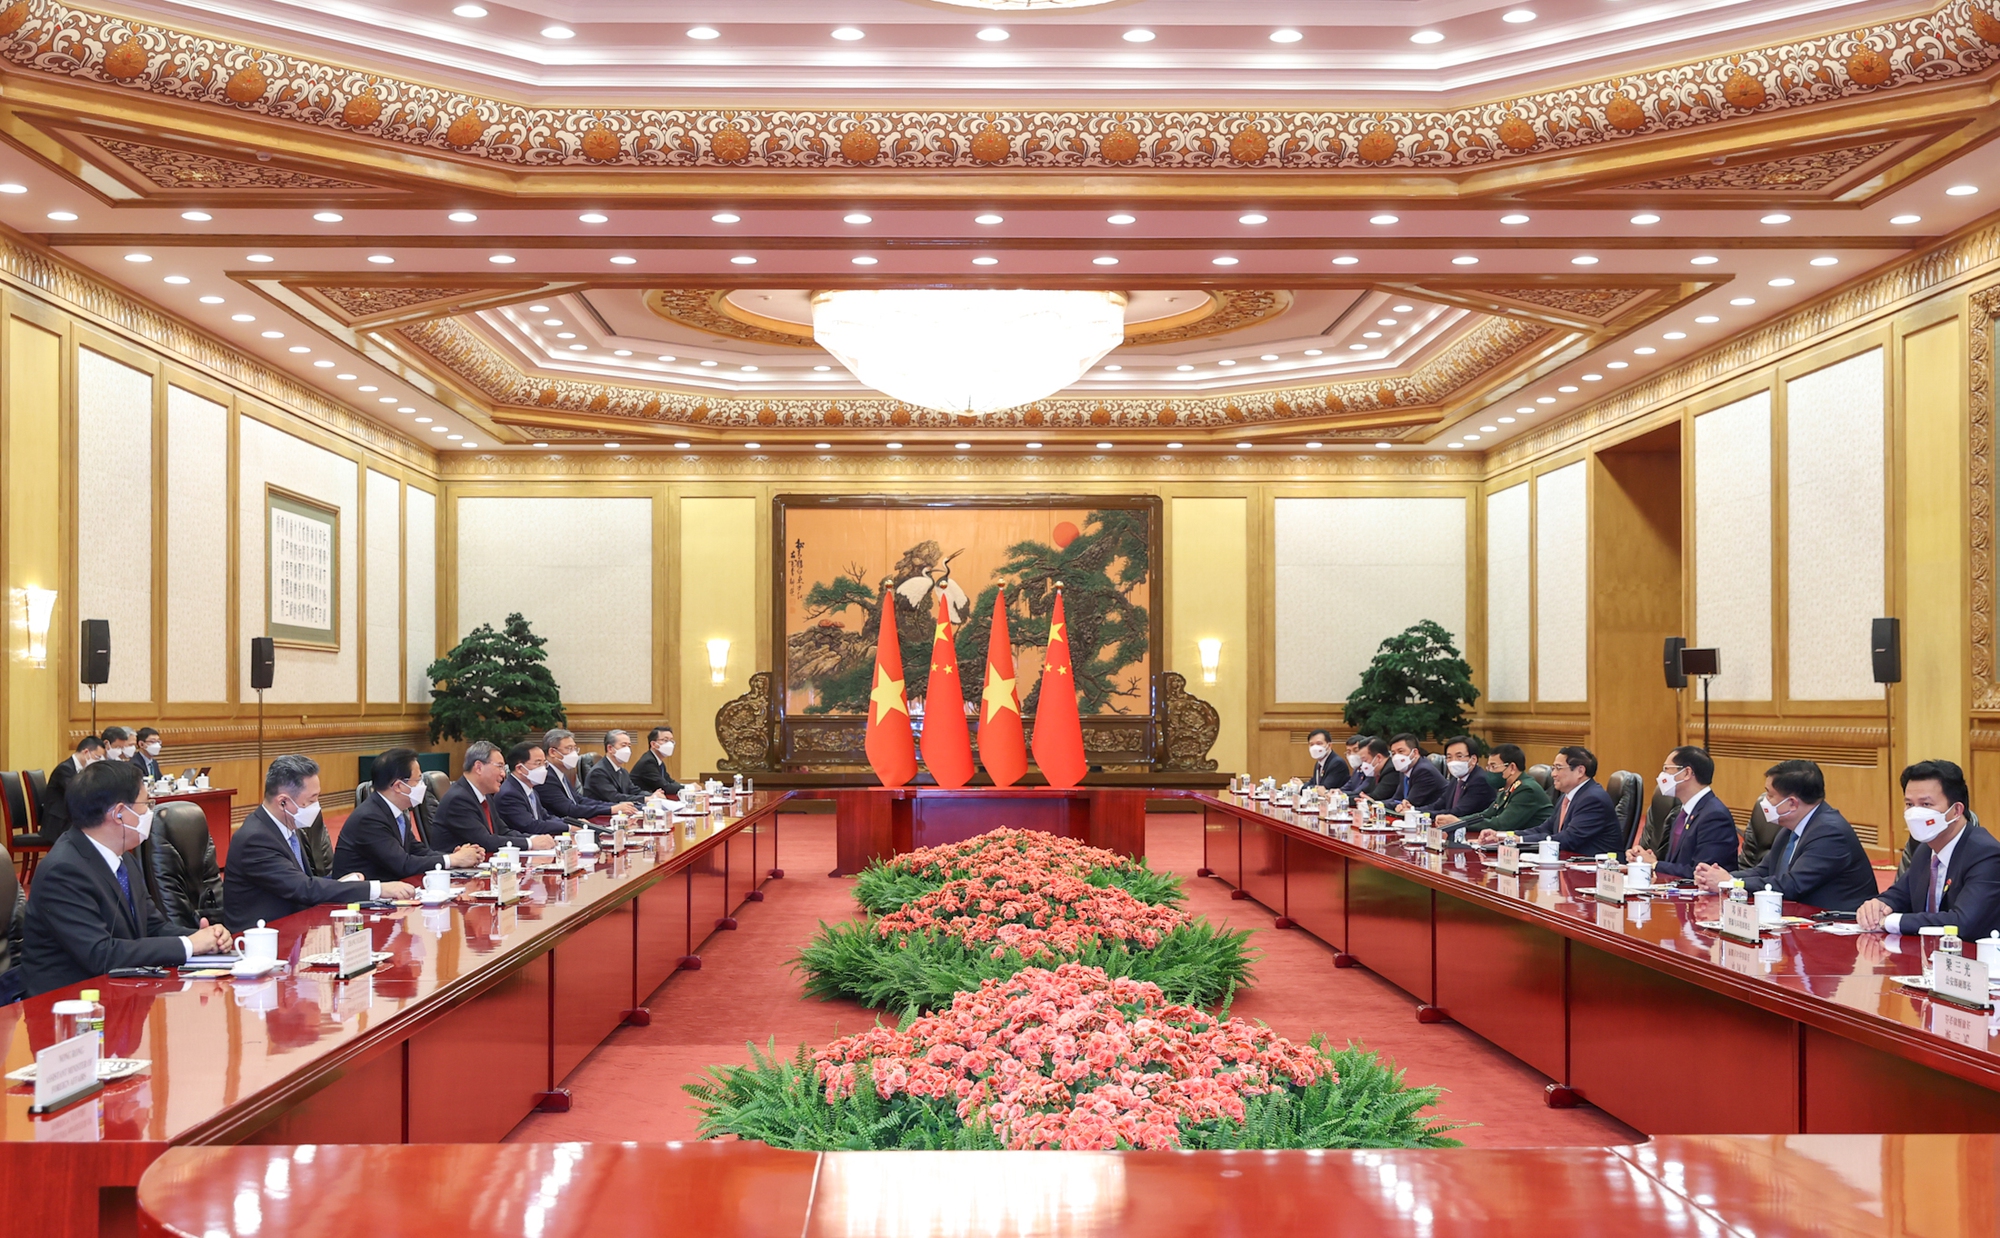 Chùm ảnh: Lễ đón chính thức Thủ tướng Chính phủ Phạm Minh Chính thăm Trung Quốc - Ảnh 7.